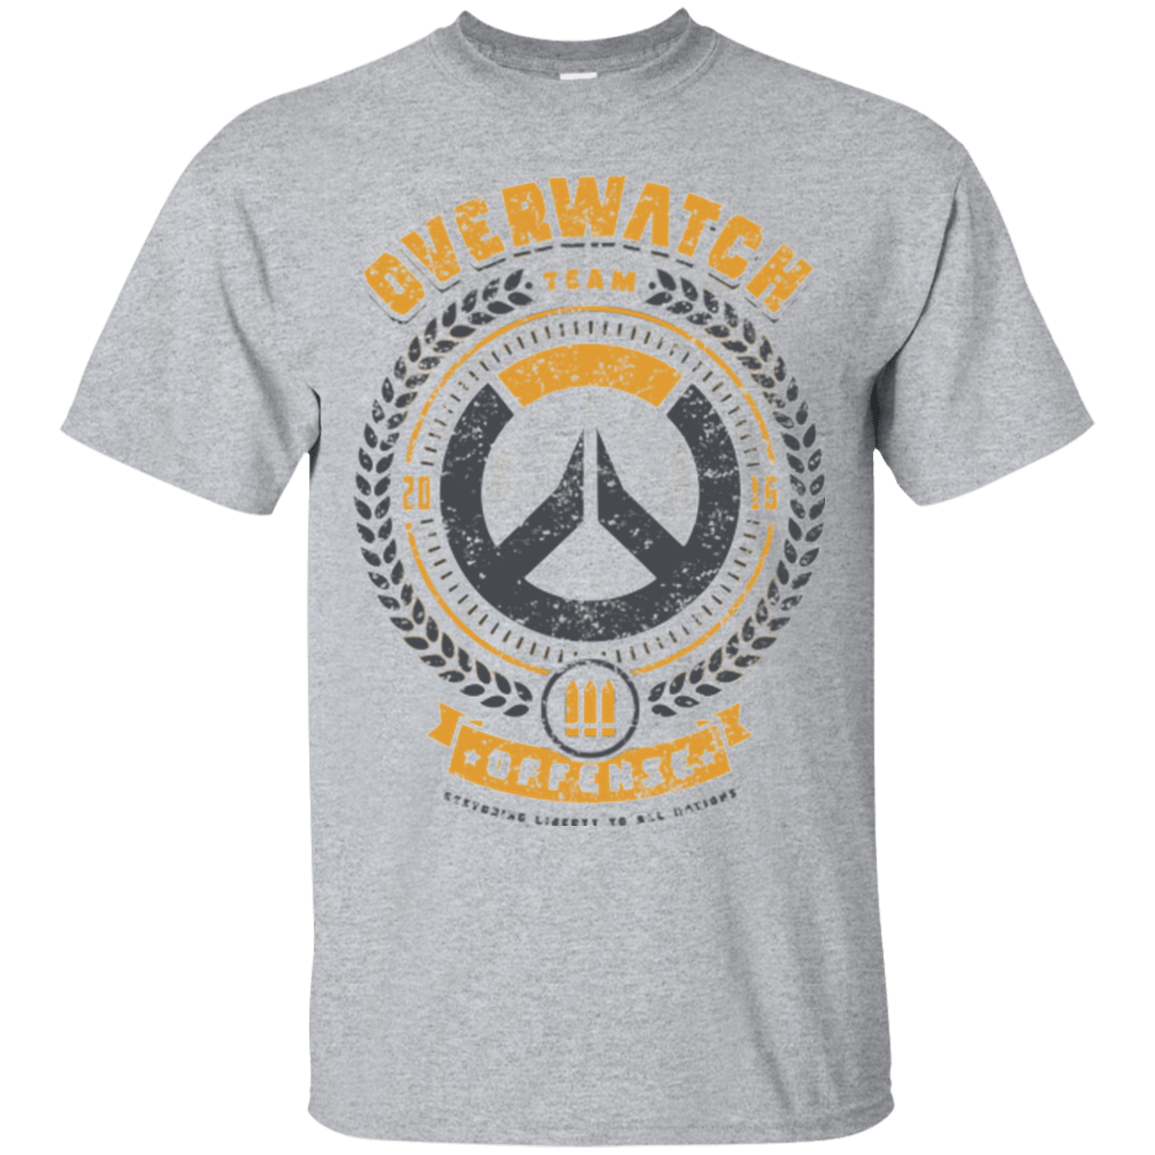 T-Shirts Sport Grey / Small Offense Team T-Shirt